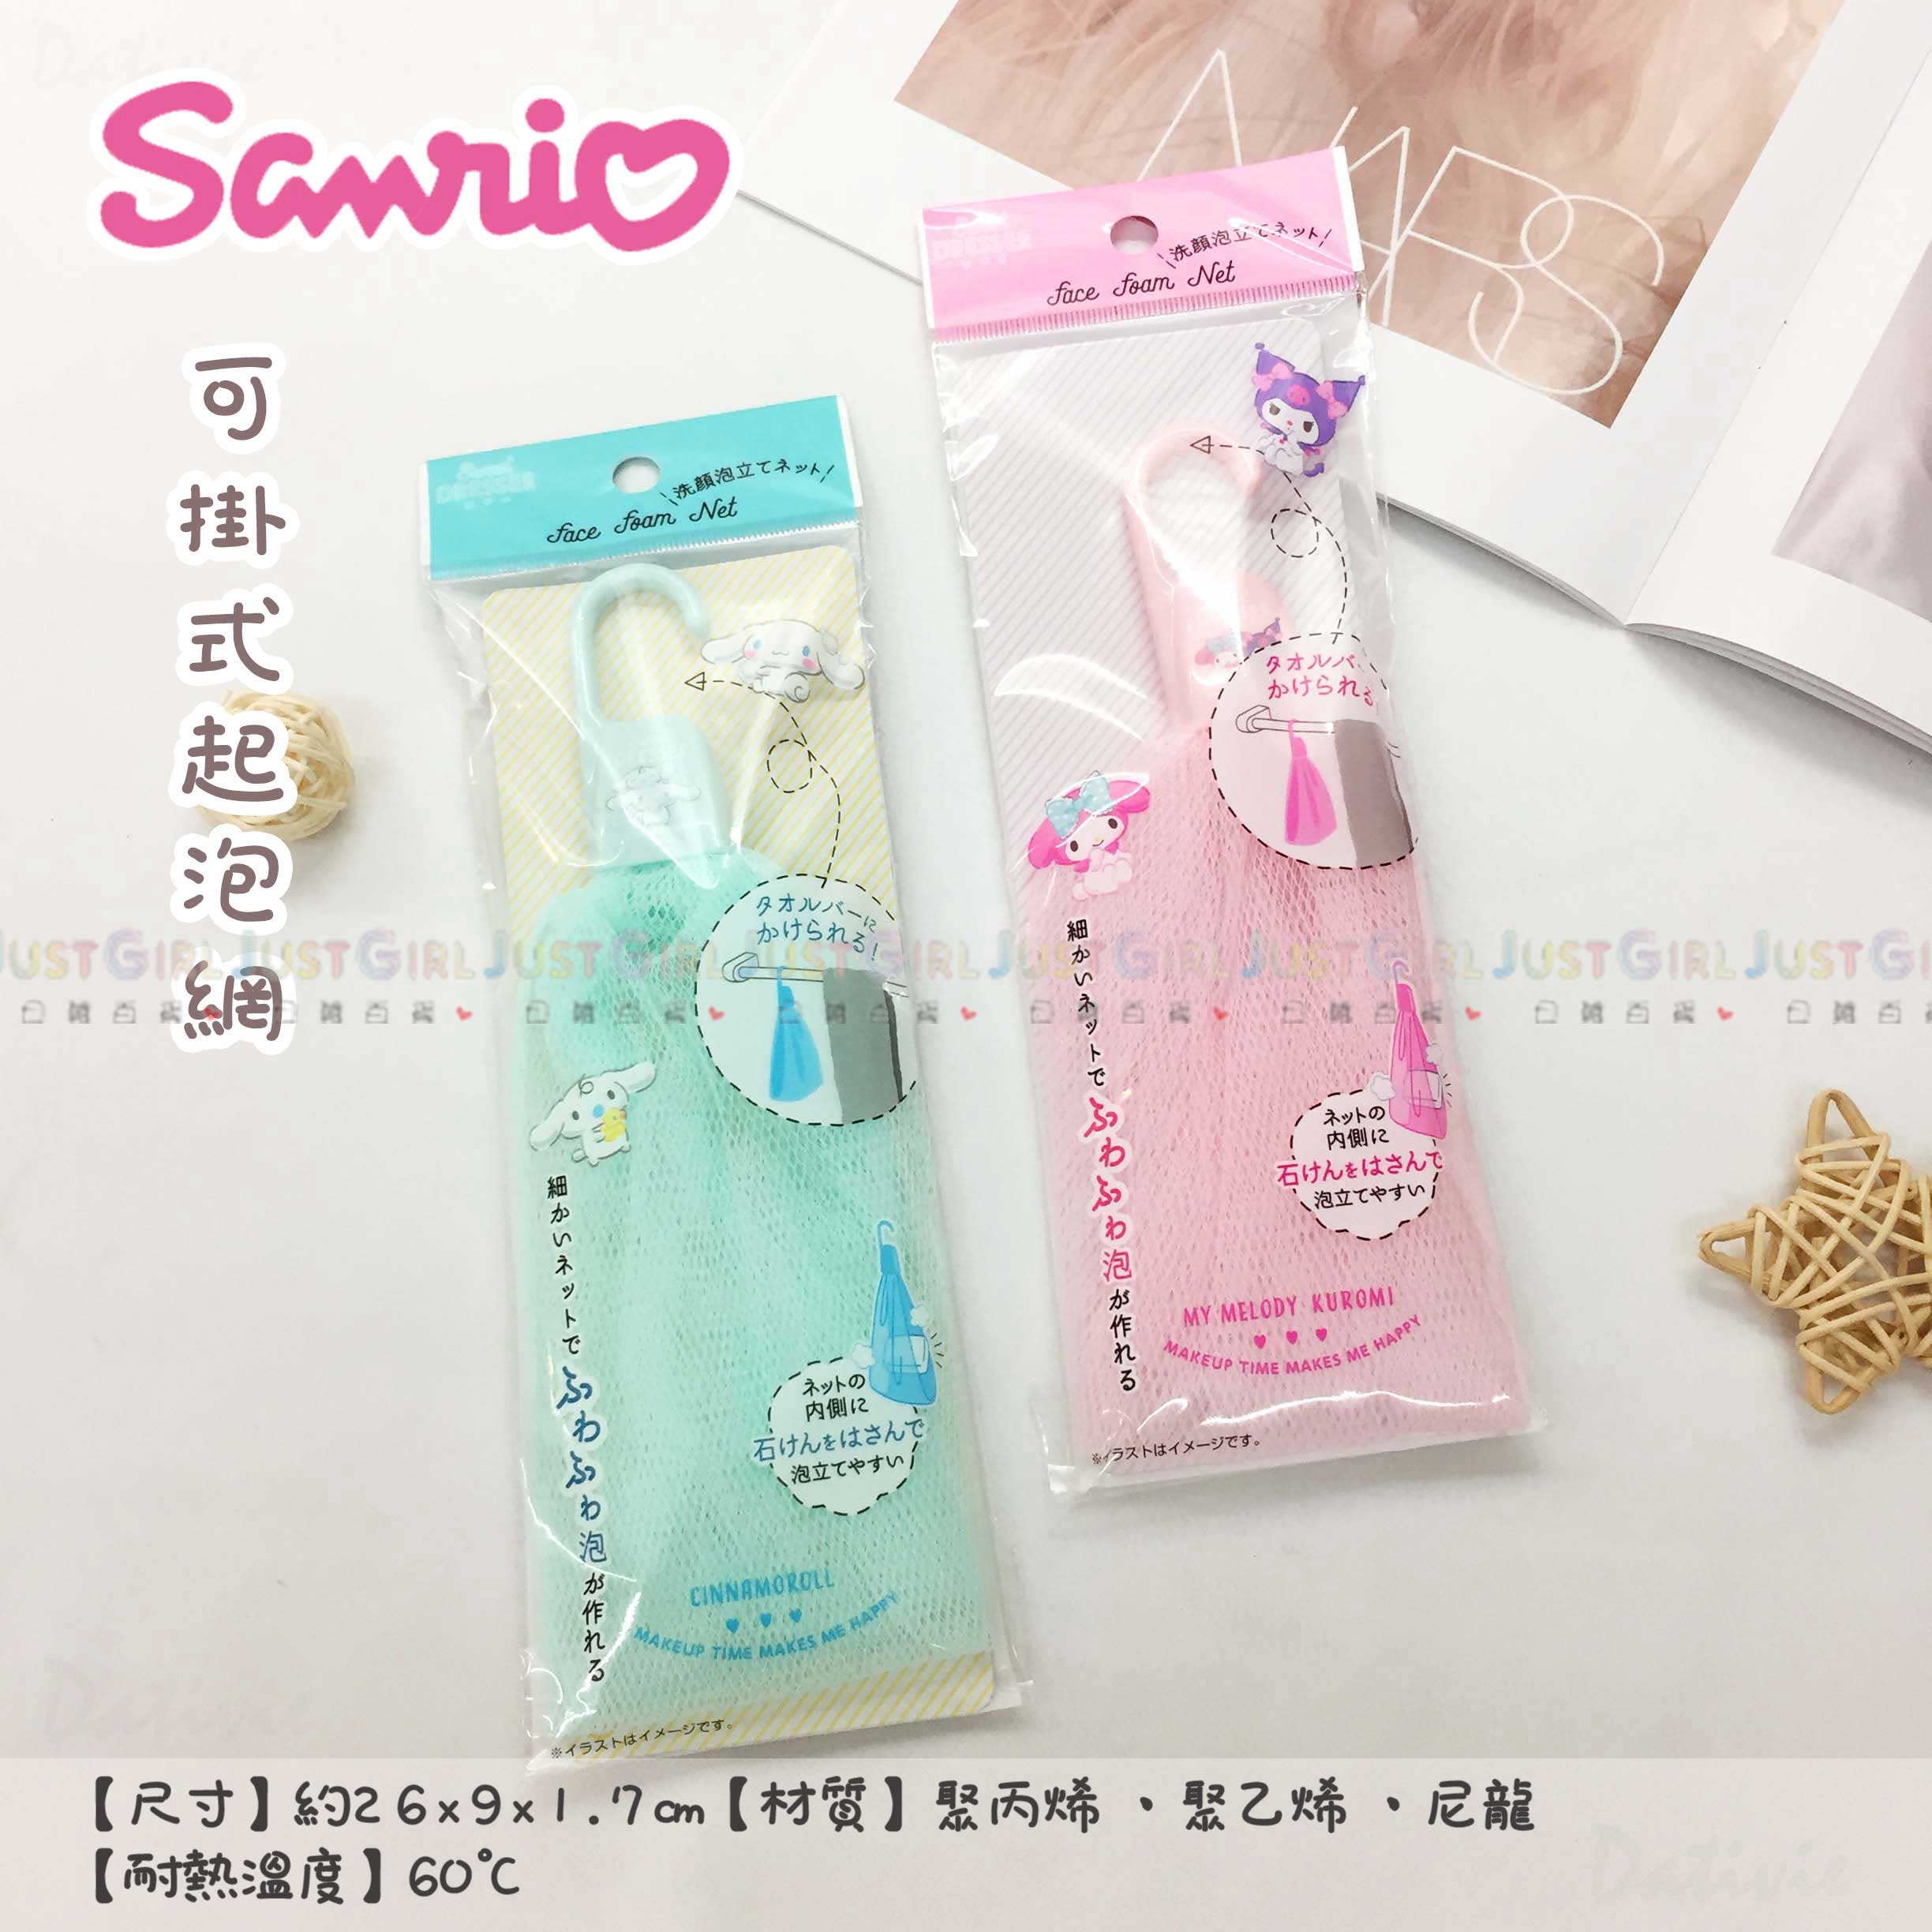 可掛式起泡網-三麗鷗 Sanrio 日本進口正版授權